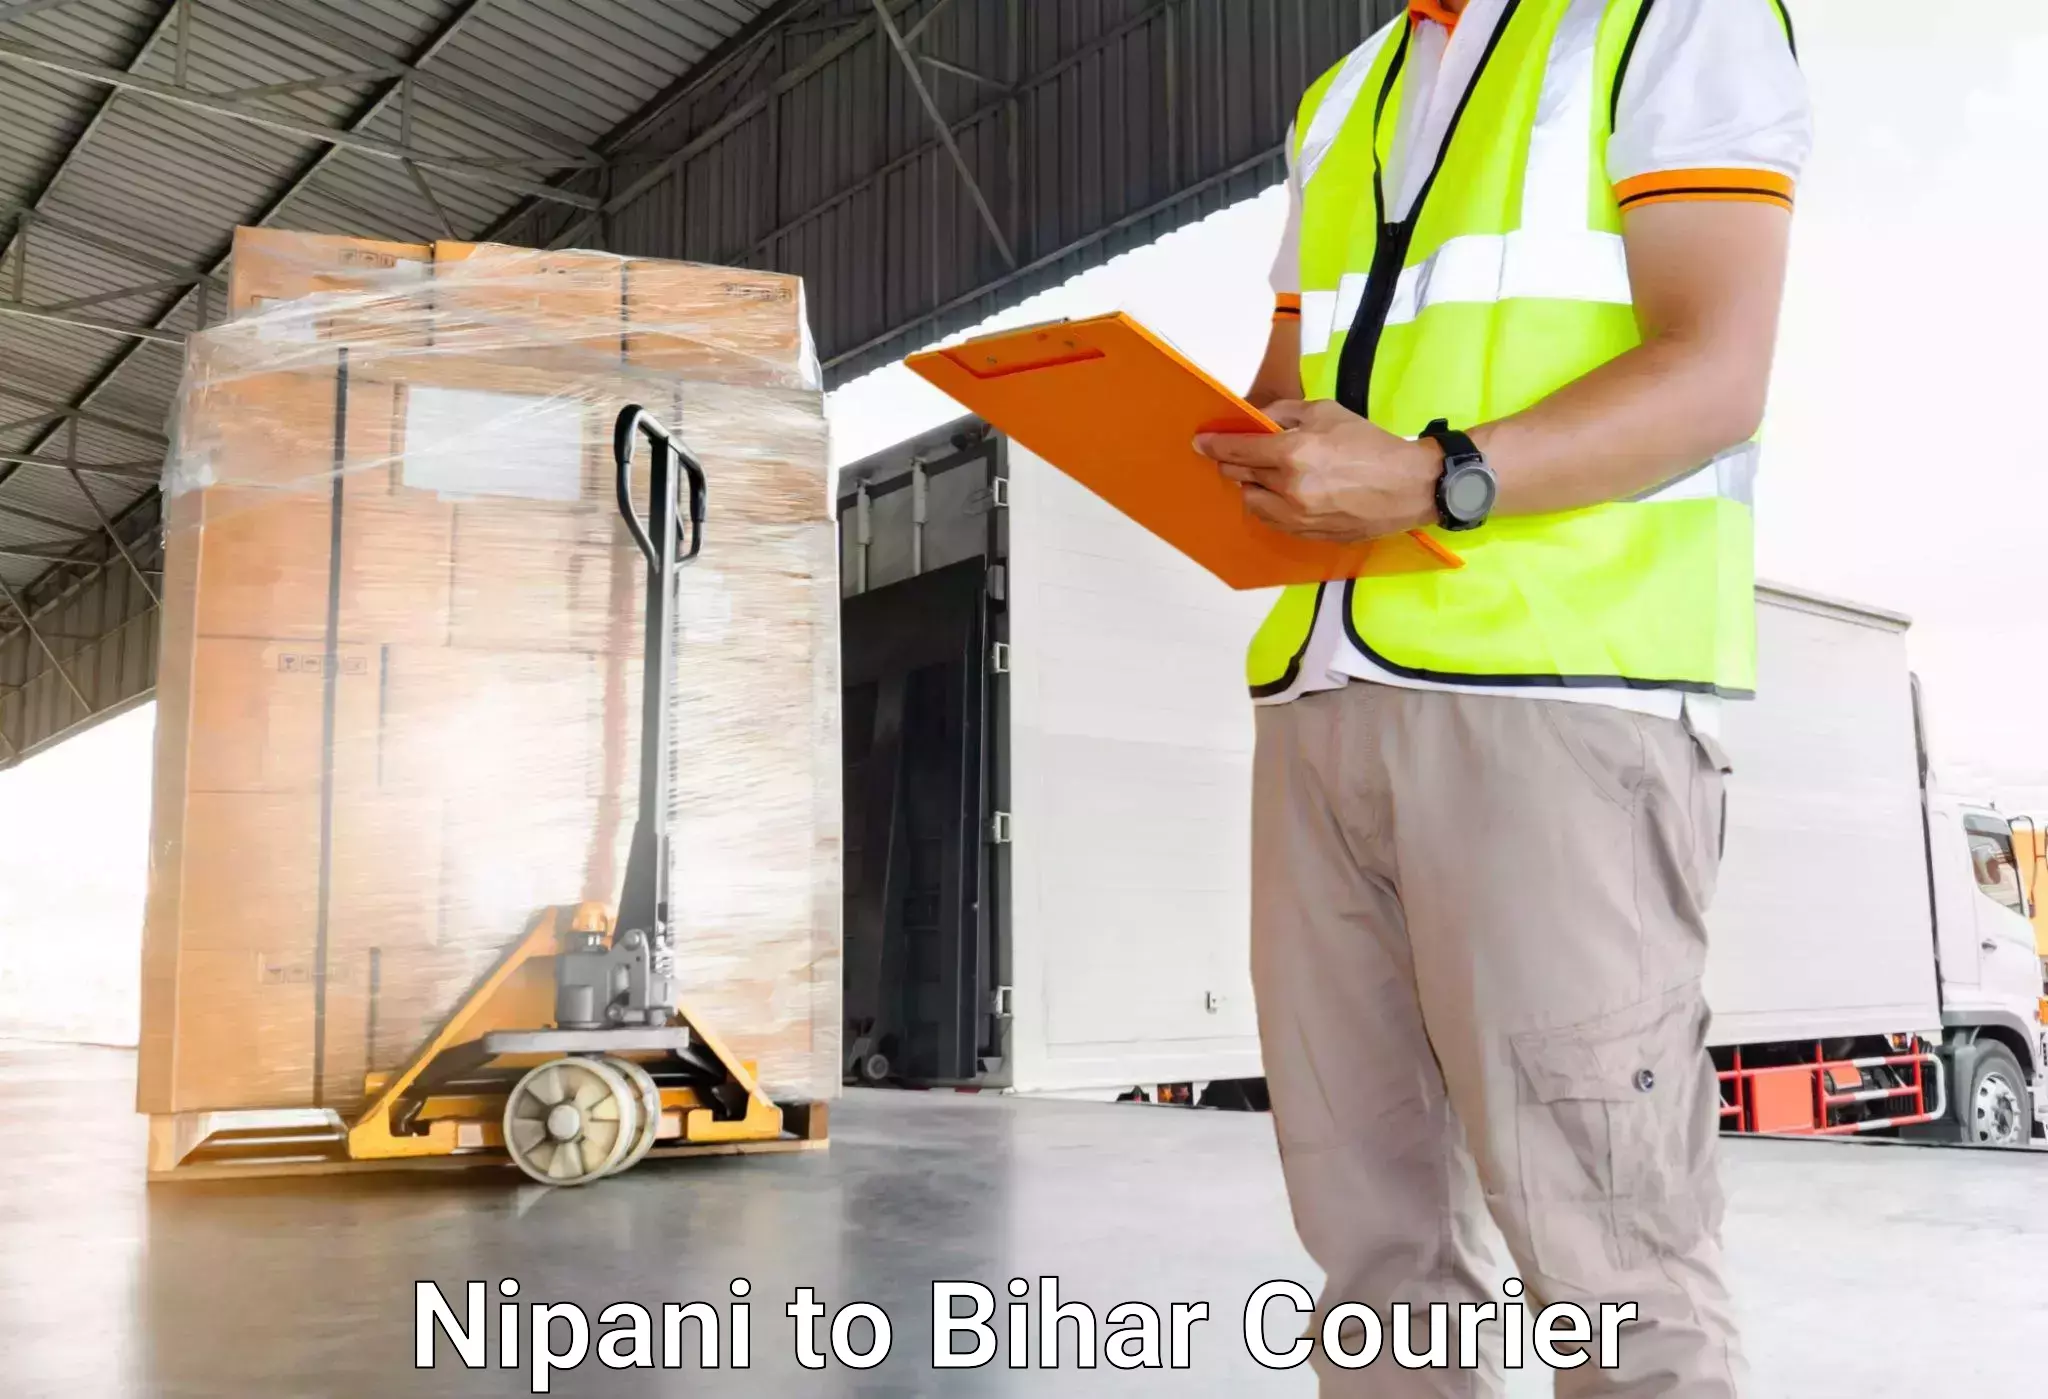 Luggage delivery network Nipani to Vaishali